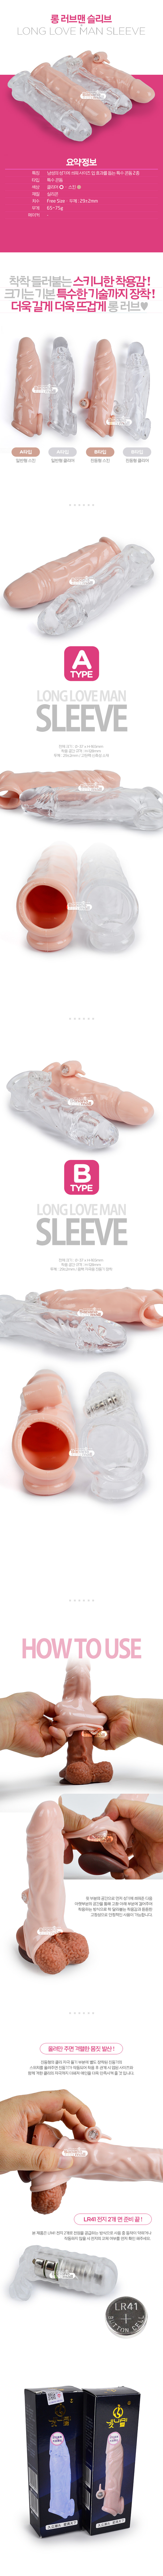 [남성 강화] 롱 러브맨 슬리브(Long Love Man Sleeve) (JBG)